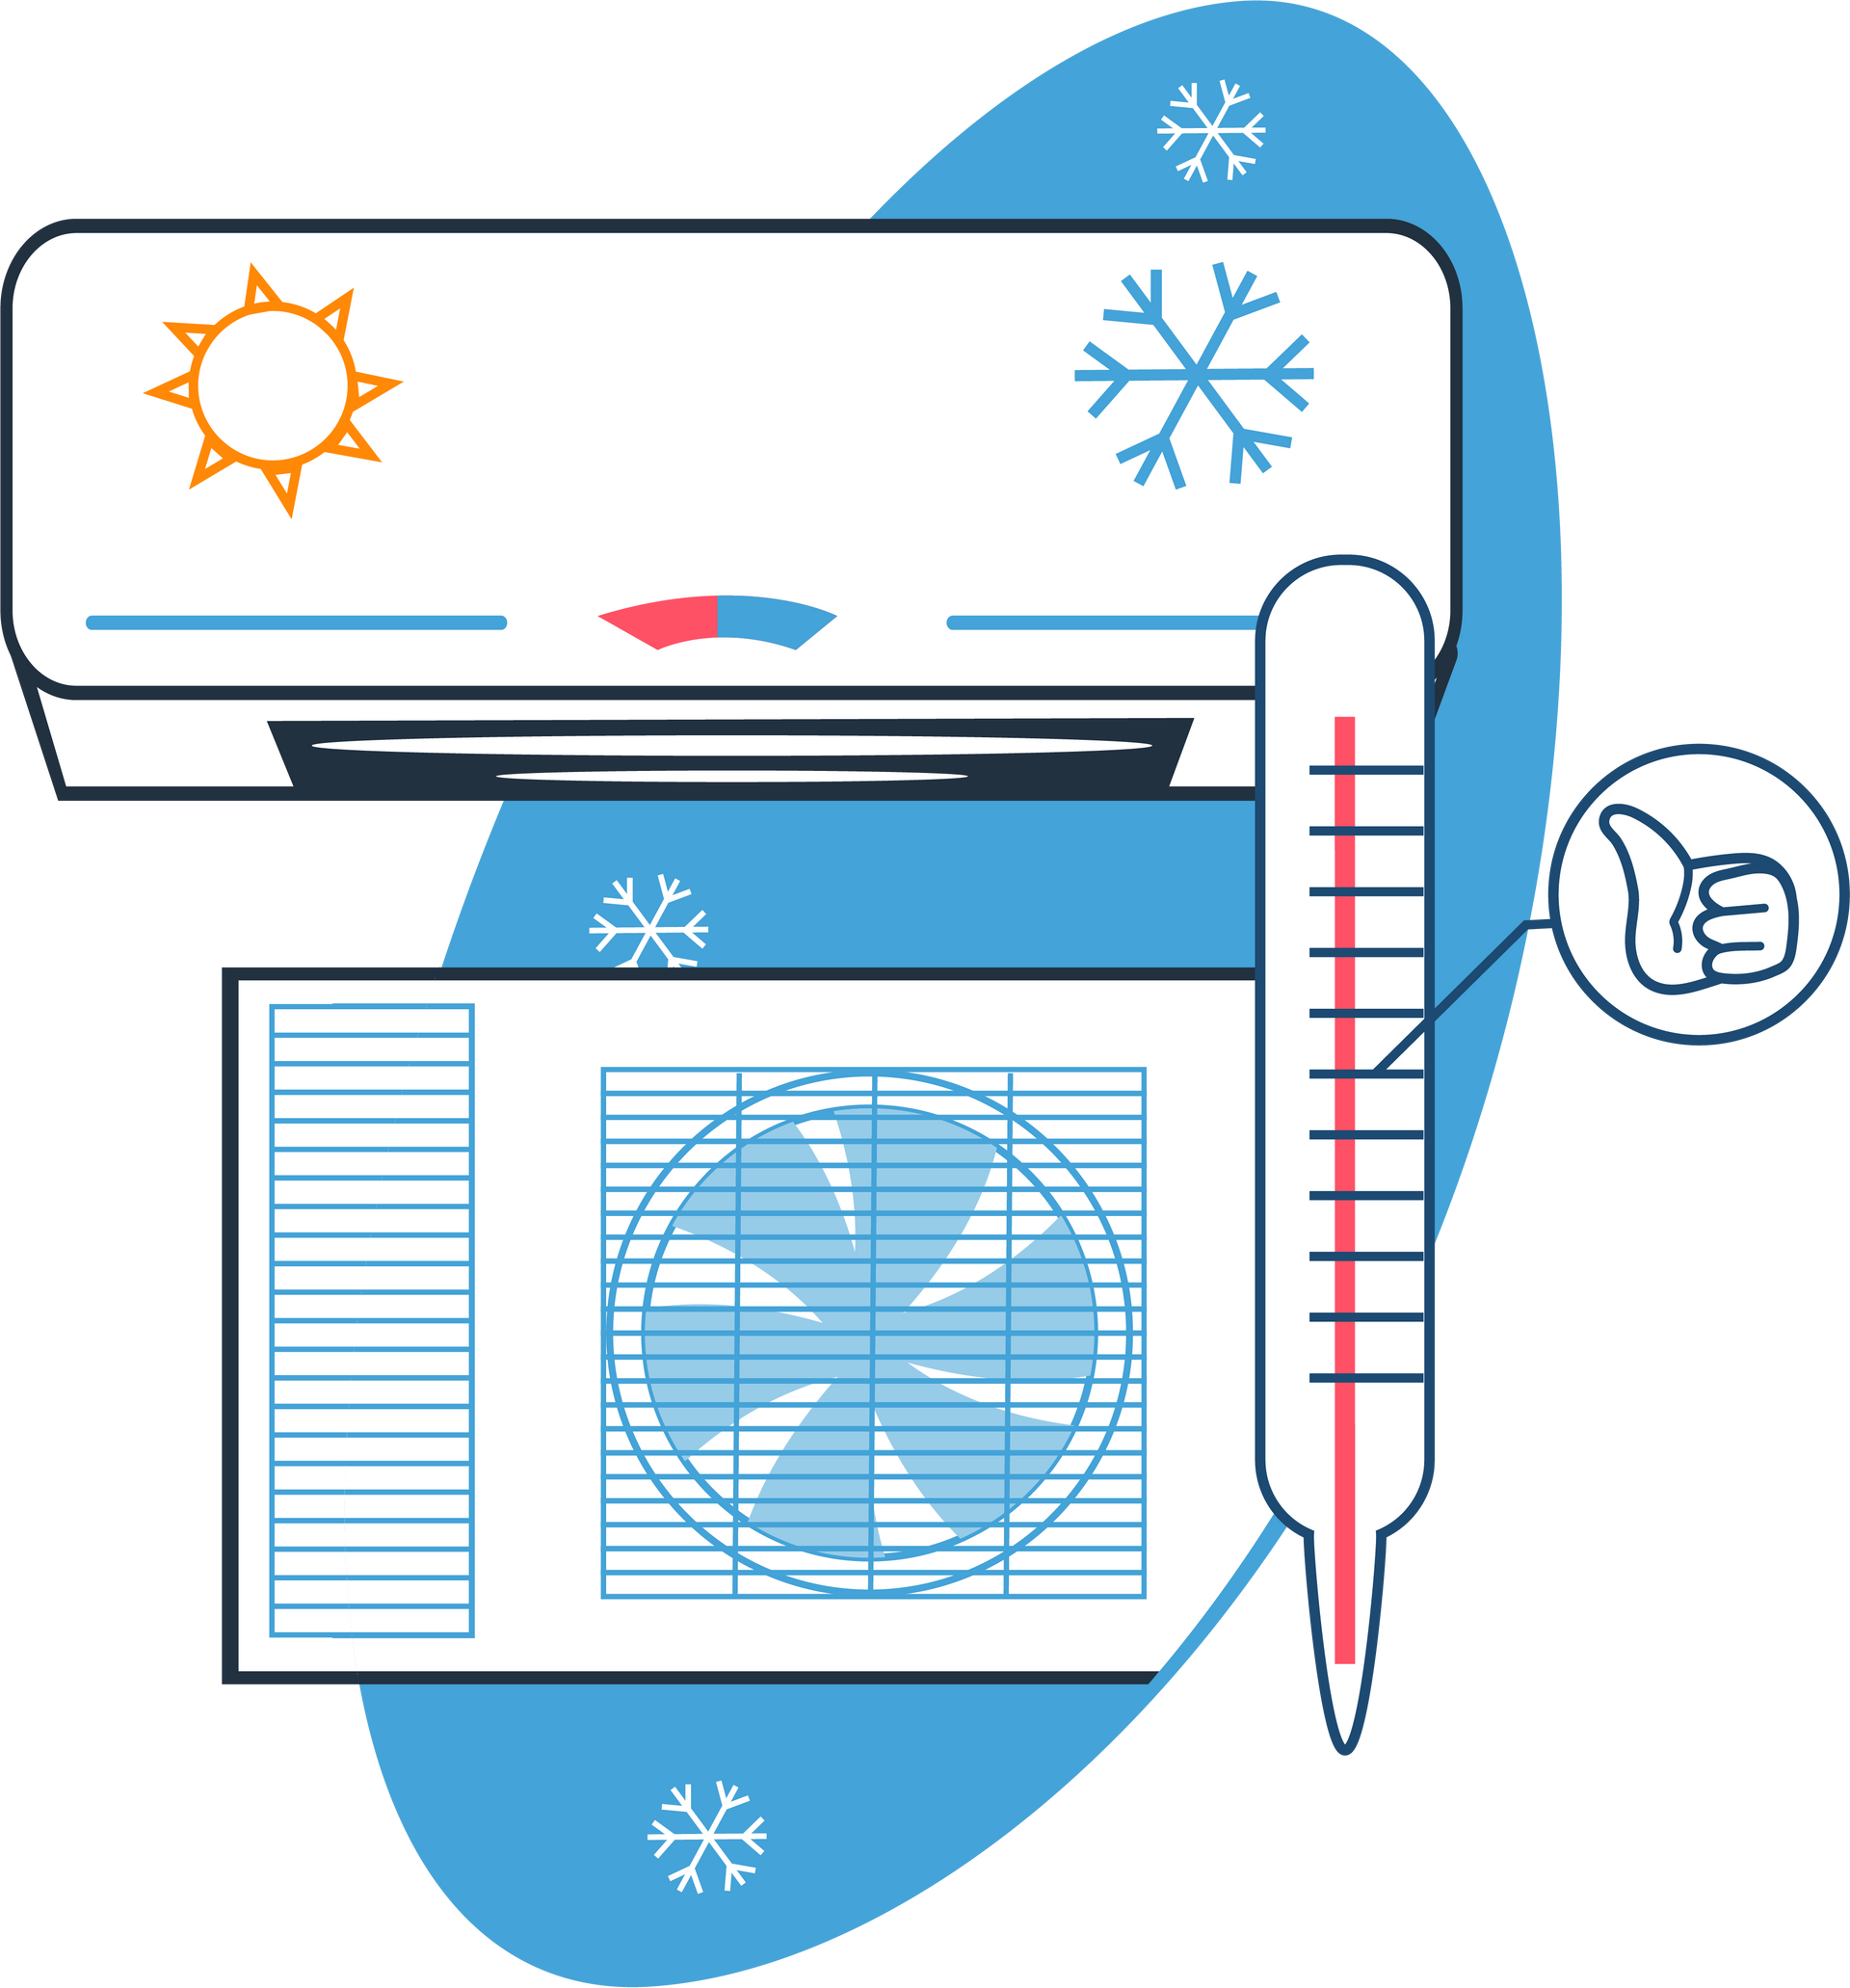 Systèmes de chauffage et climatisation en dessin - Page Froid commercial